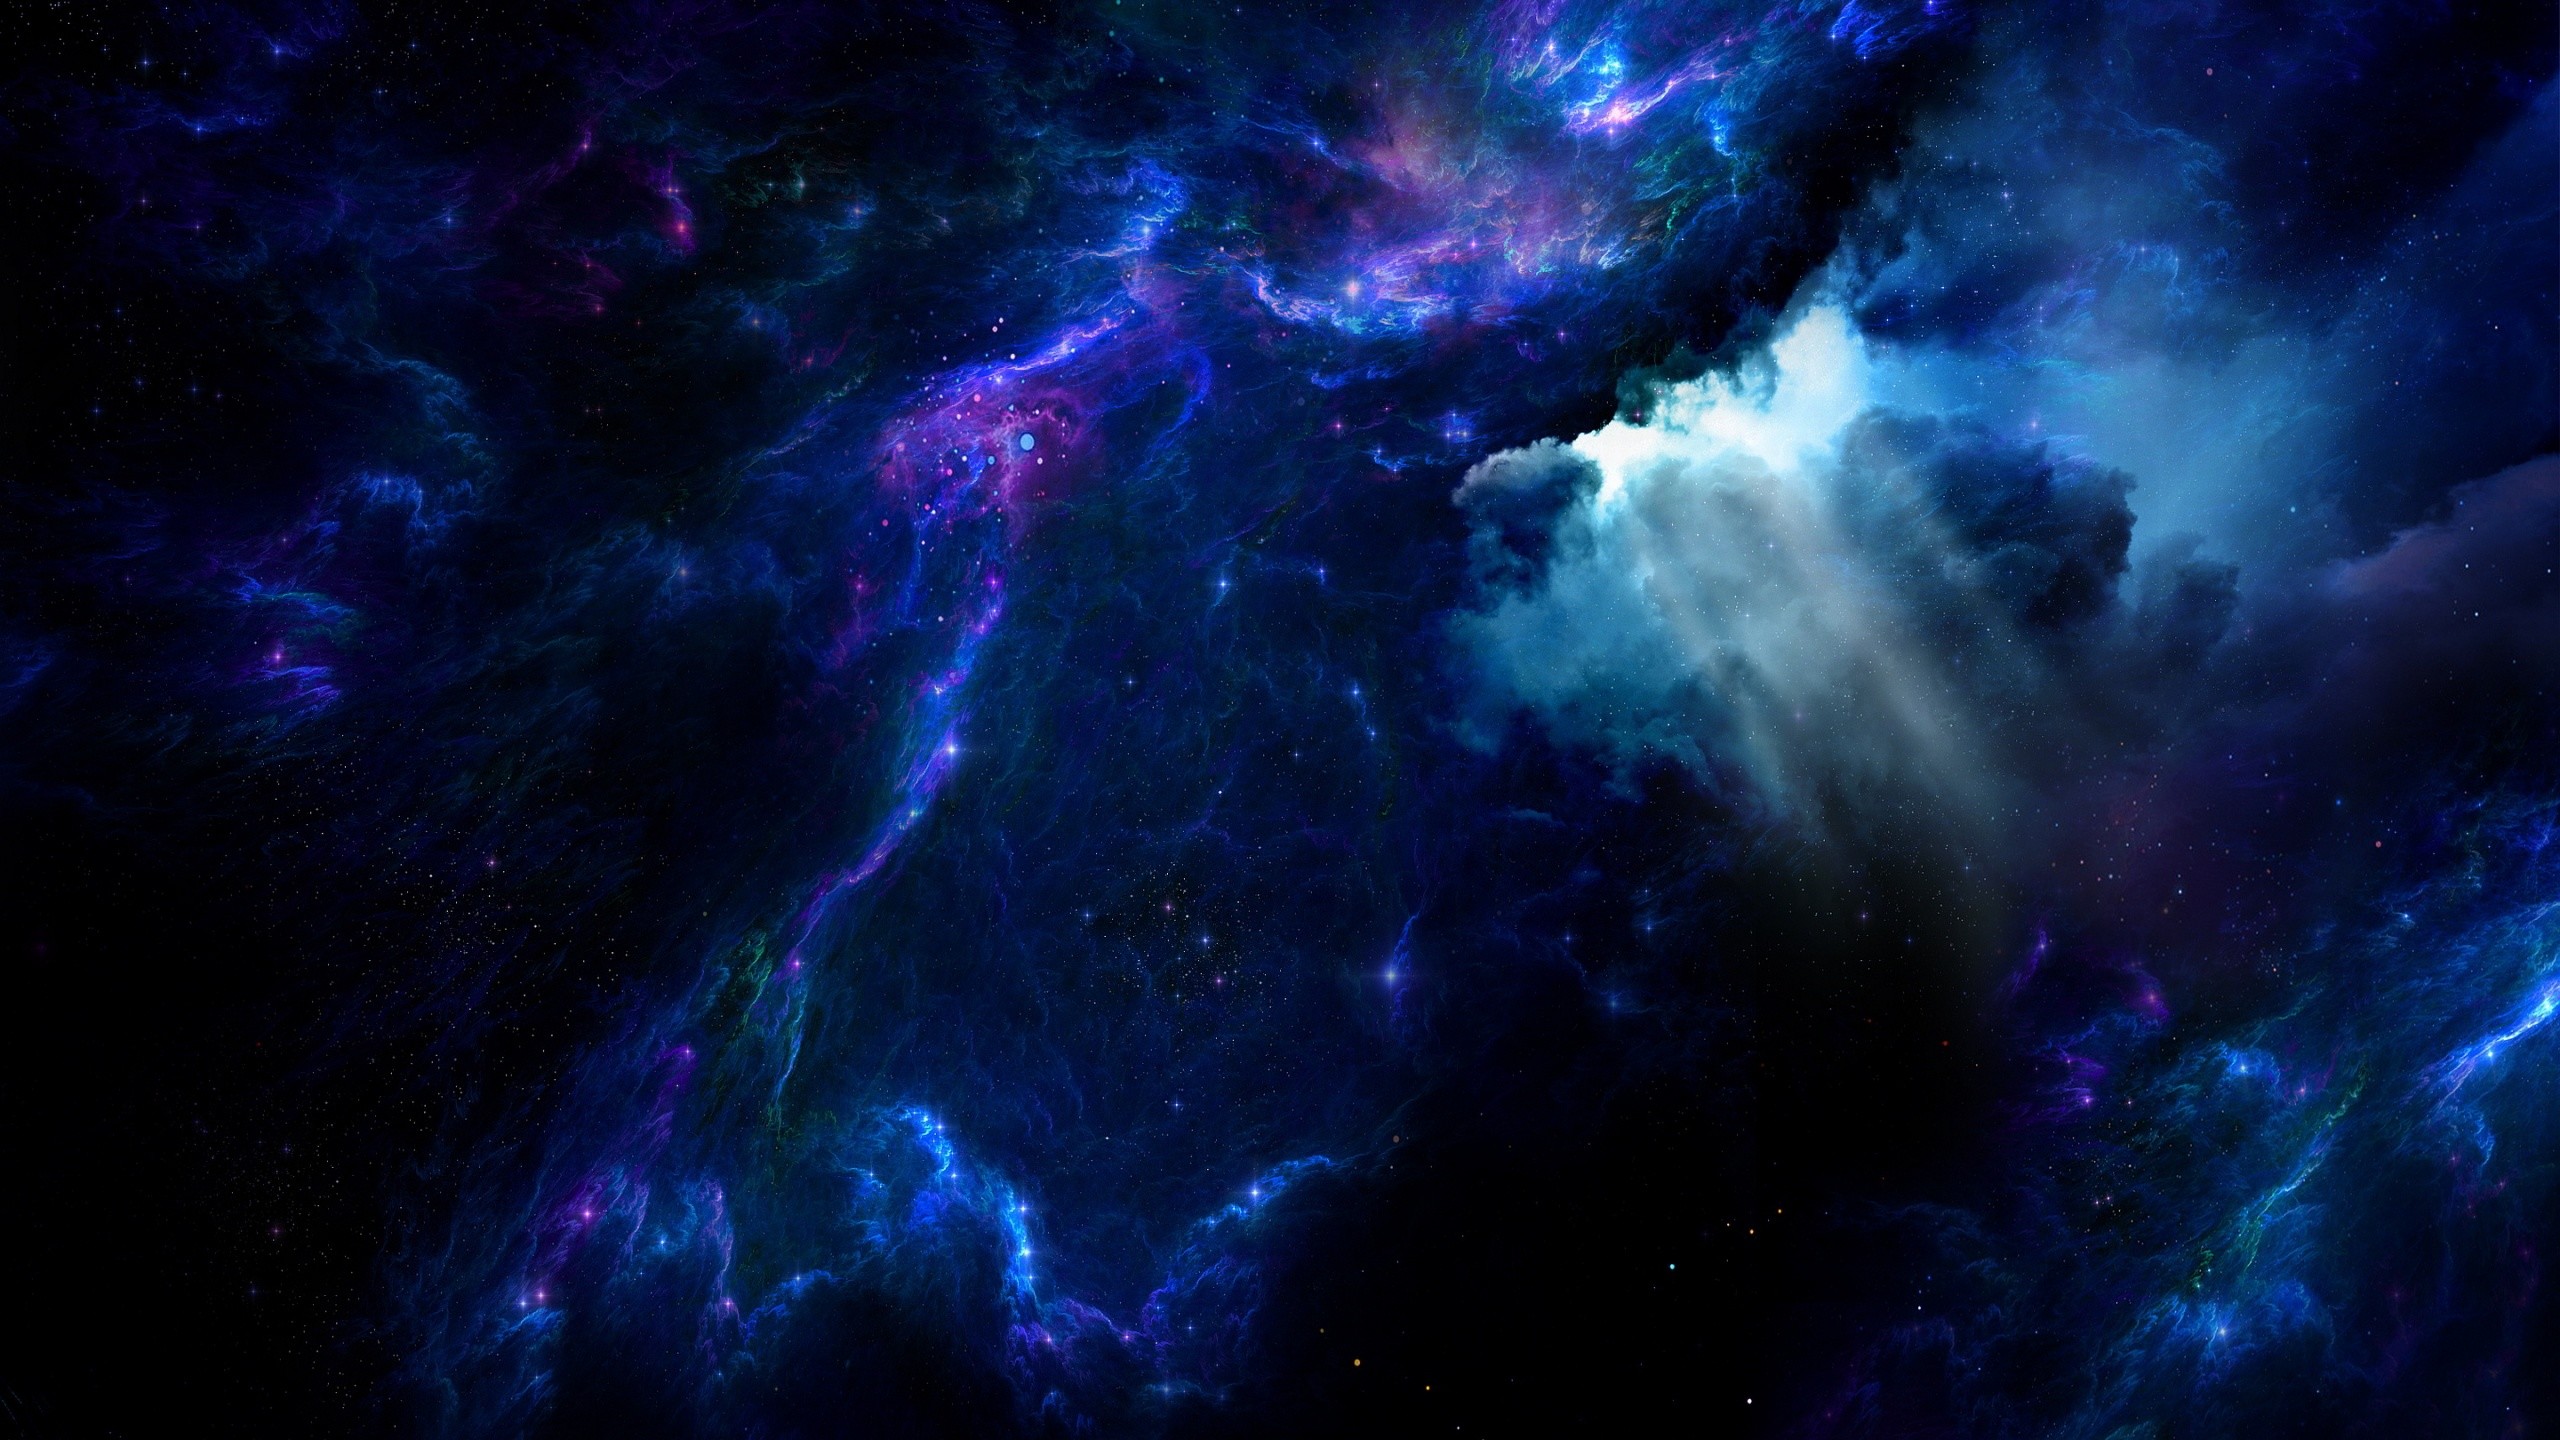 Hình nền không gian 1440p: Mang thiên nhiên vào máy tính với hình nền không gian 1440p. Sẽ cảm thấy như mình đang mở ra một cửa sổ rộng mở về bầu trời đêm, cảm nhận được vẻ đẹp lên ngôi của vũ trụ và bầu trời đầy sao trên màn hình máy tính của mình.